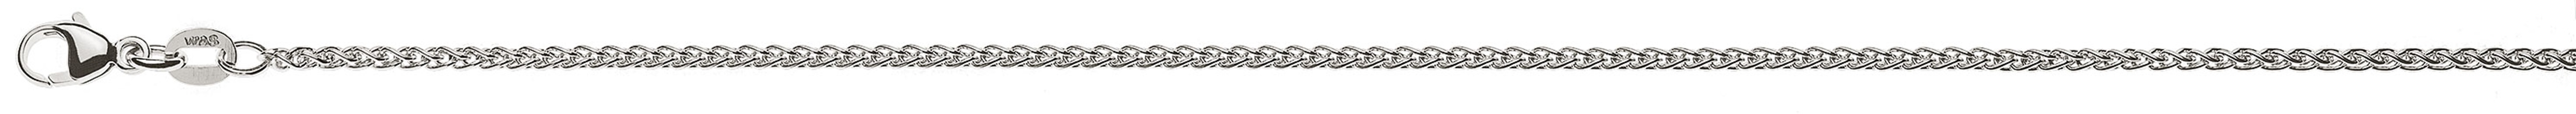 AURONOS Prestige Necklace white gold 18K cable chain 60cm 1.65mm